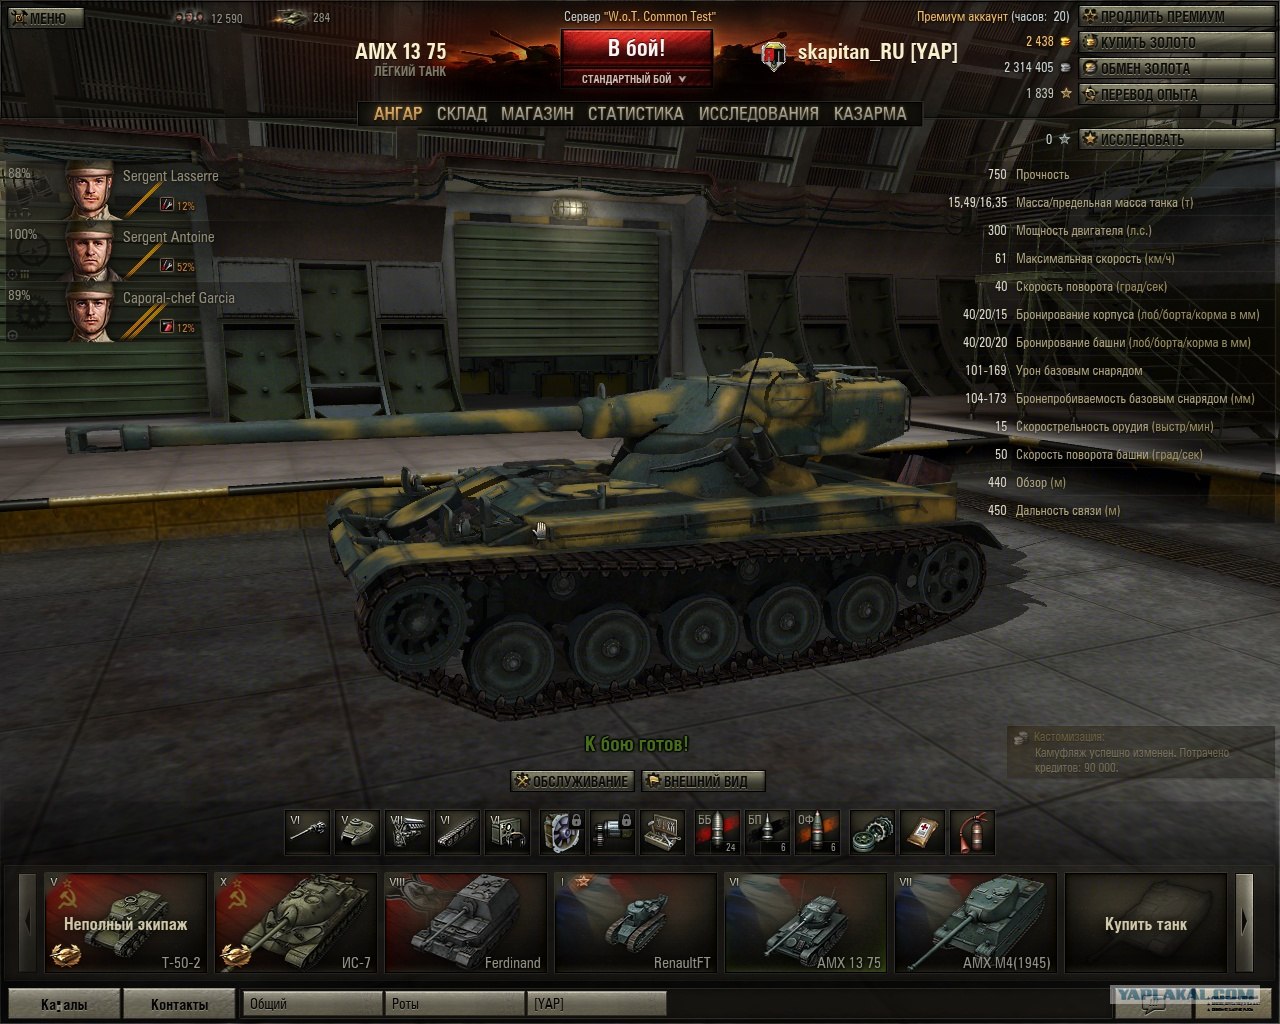 AMX скорострельность. Sherman sa50. 75mm sa50. Т-50 скорость поворота башни. Танк 300 купить иркутск